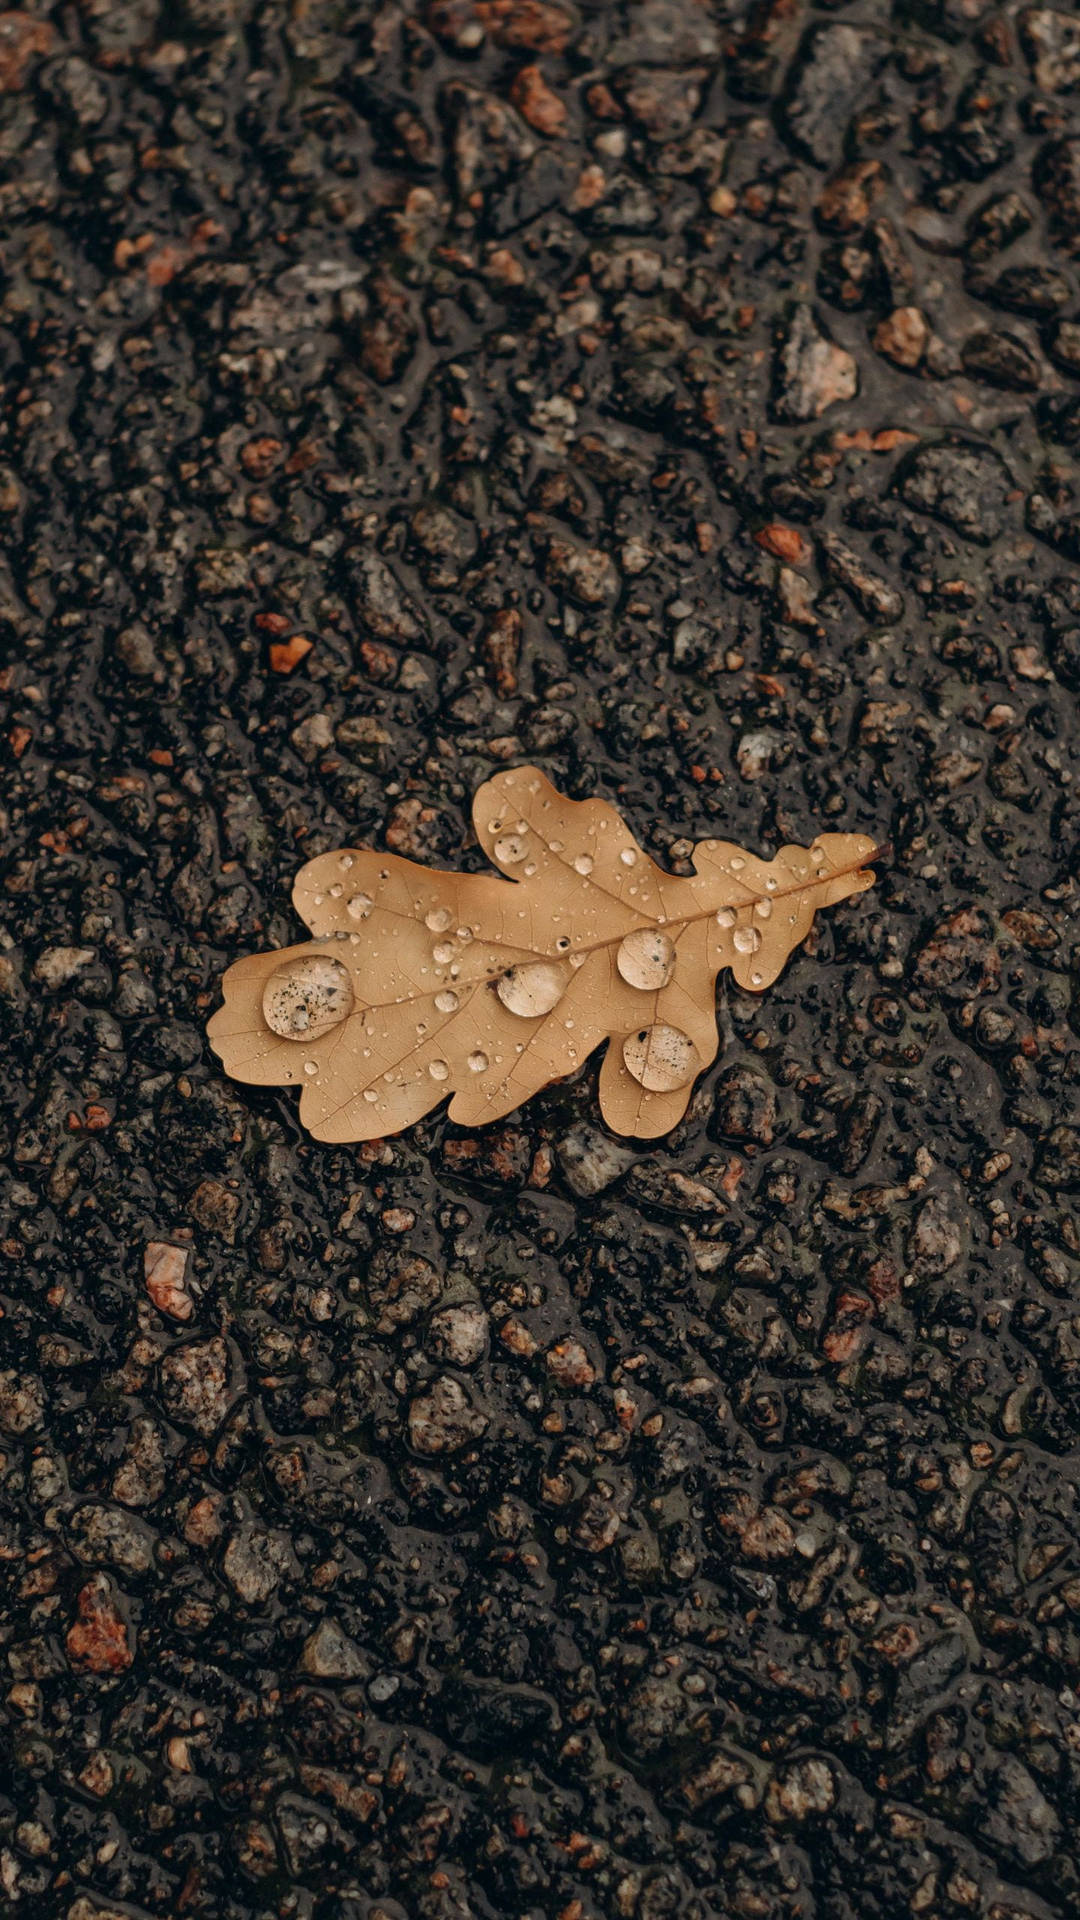 Samsung A51 Wet Autumn Leaf On Ground Background